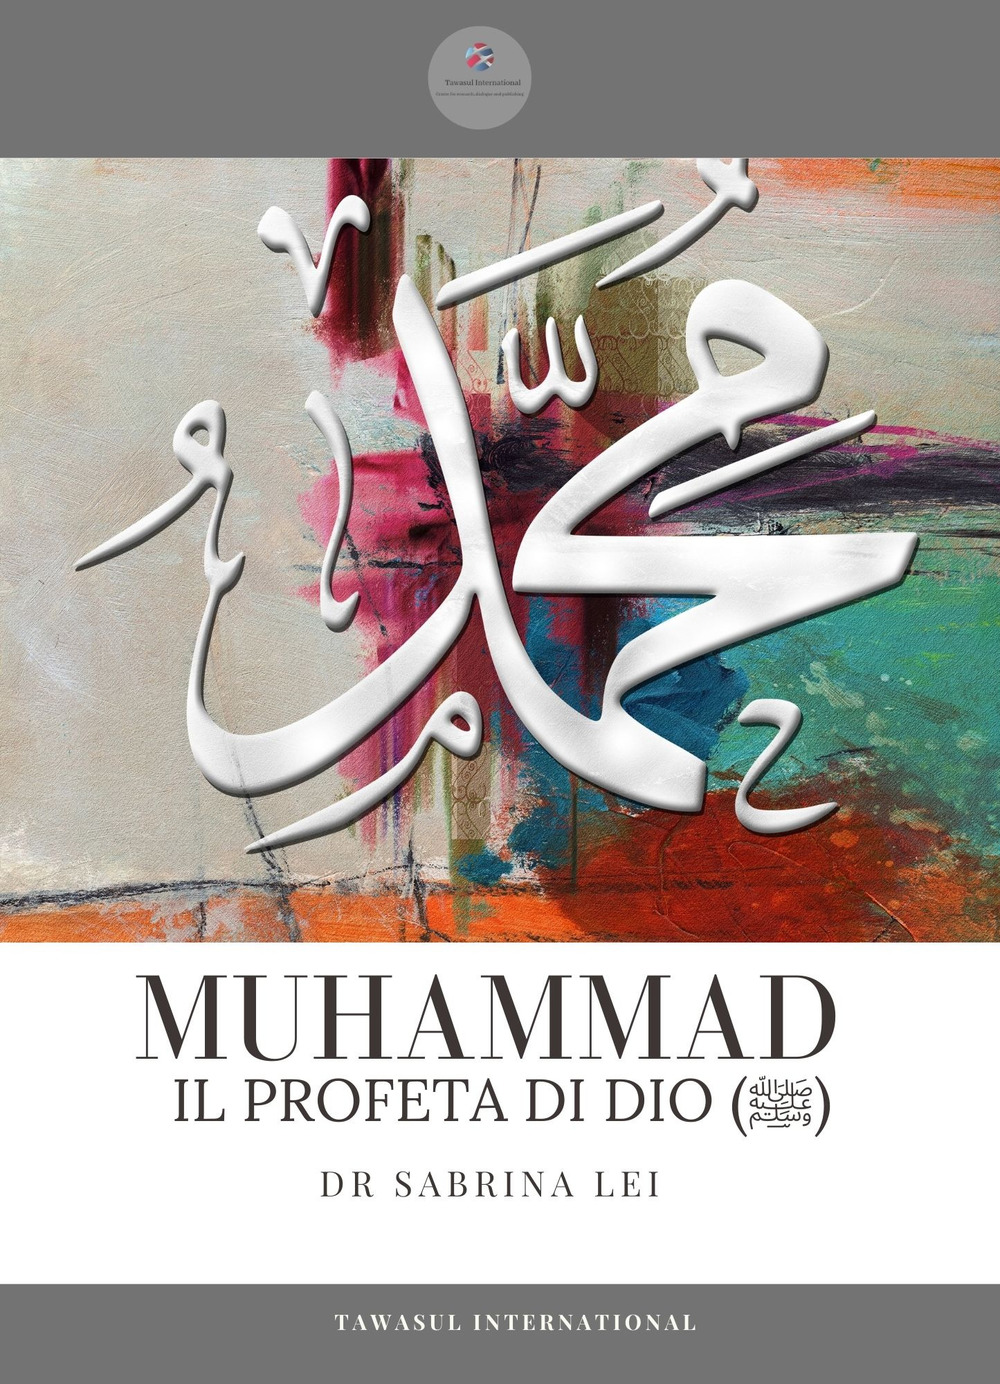 Muhammad, il profeta dell'Islam. Una biografia completa dalla rivelazione all'Hijrah